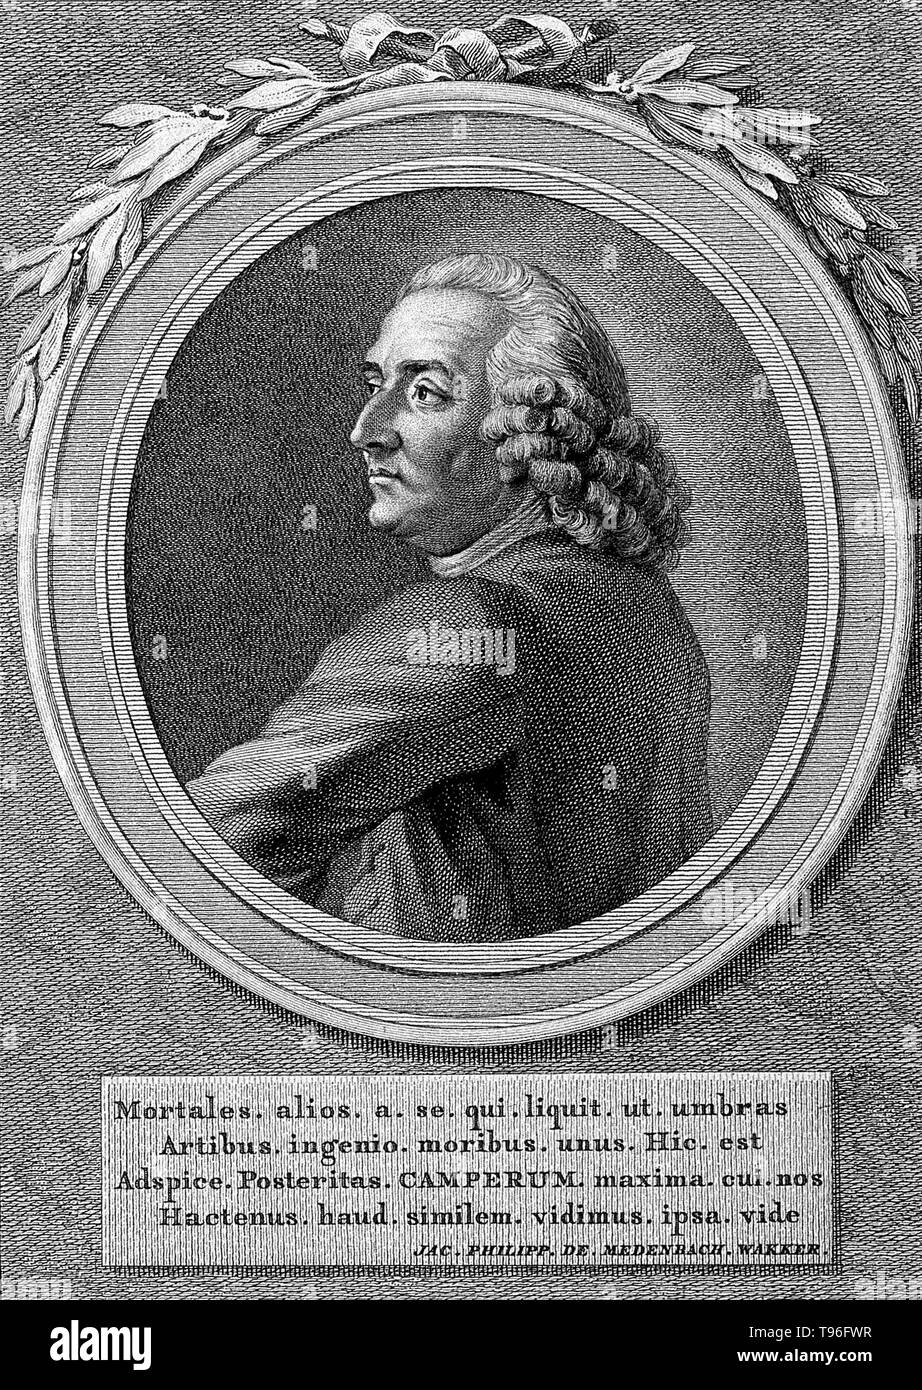 Petrus Camper (11 maggio 1722 - Aprile 7, 1789) era un medico olandese, anatomista, fisiologo, ostetrica, zoologo, antropologo, paleontologo e un naturalista. Ha studiato la orangutan, il rinoceronte e il cranio di un mosasaur, che ha creduto era una balena. La linea di incisione Reinier Vinkeles e C. Bogerts, 1792, dopo Jacobus acquista. Foto Stock